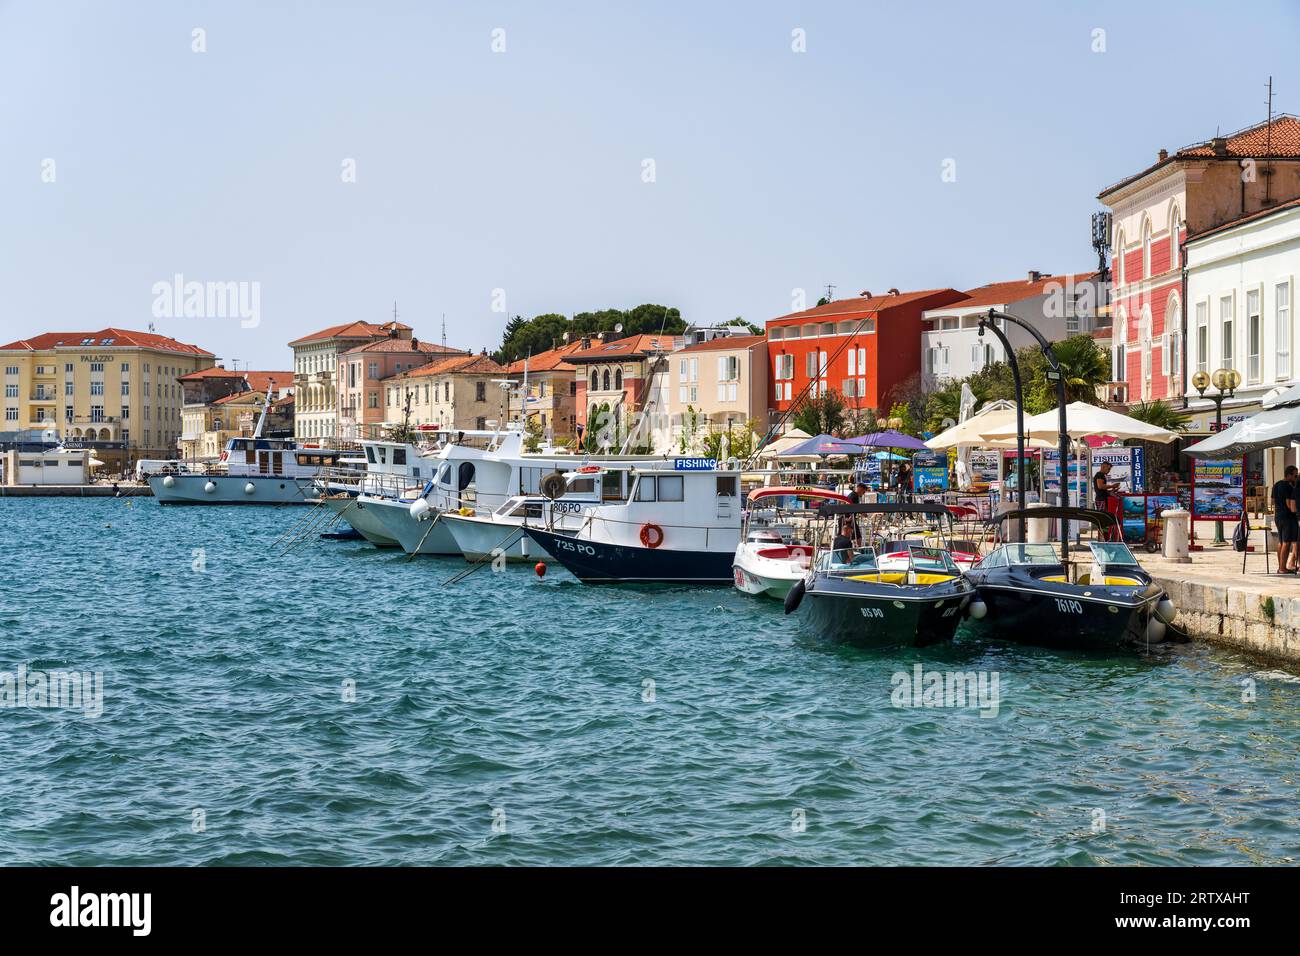 Bâtiments colorés et bateaux sur les quais de Poreč, une station balnéaire populaire, sur la péninsule d'Istrie en Croatie Banque D'Images